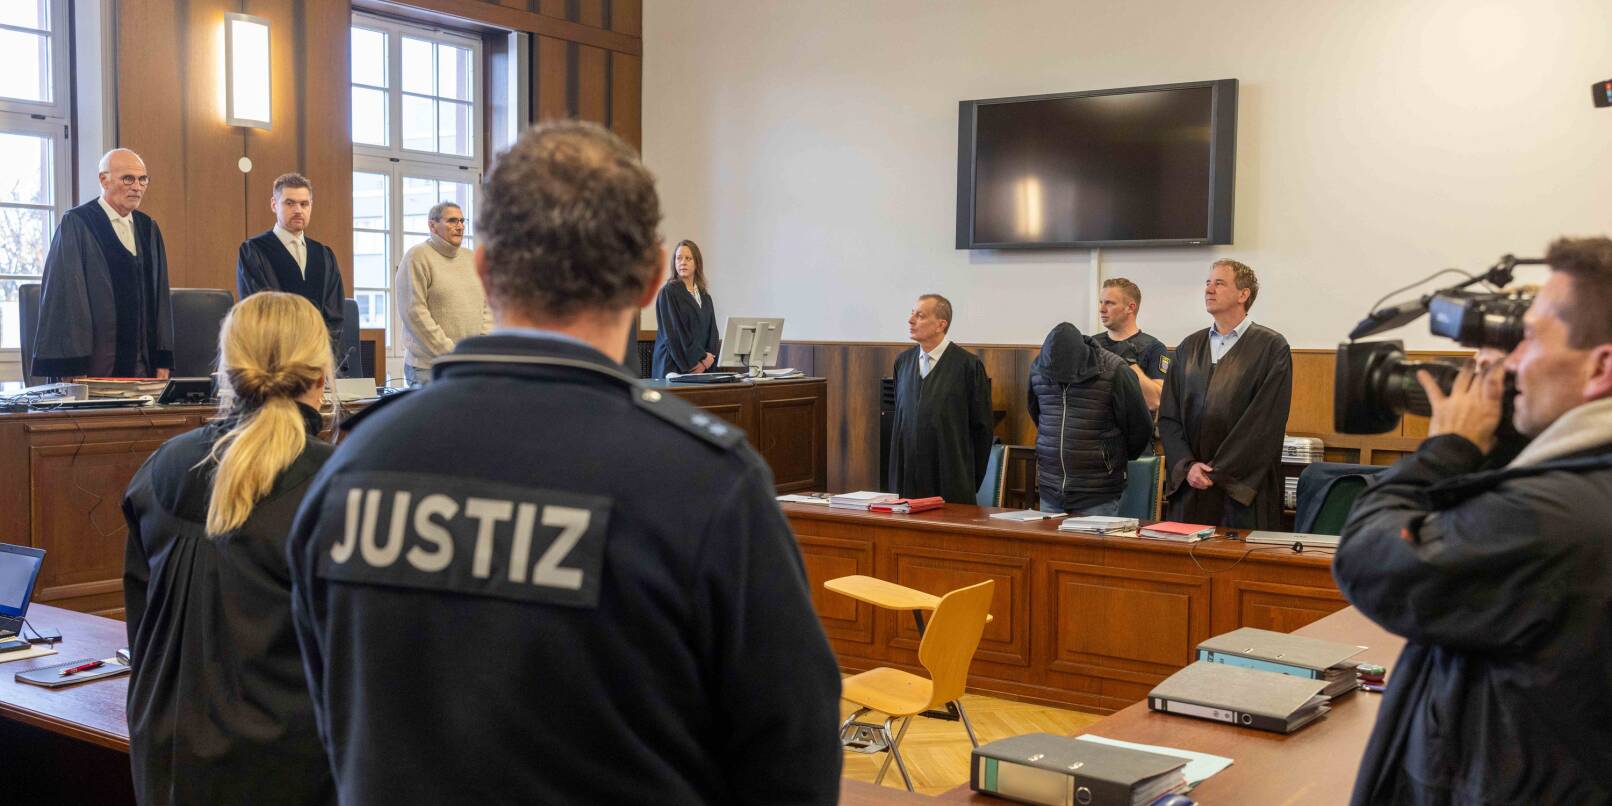 Der 62 Jahre alte Angeklagte steht mit seinen Verteidigern Andreas Sanders und Ralf Hartling im Gerichtssaal. Am Mittwochmorgen hat vor dem Landgericht Darmstadt der Mordprozess gegen ihn begonnen.